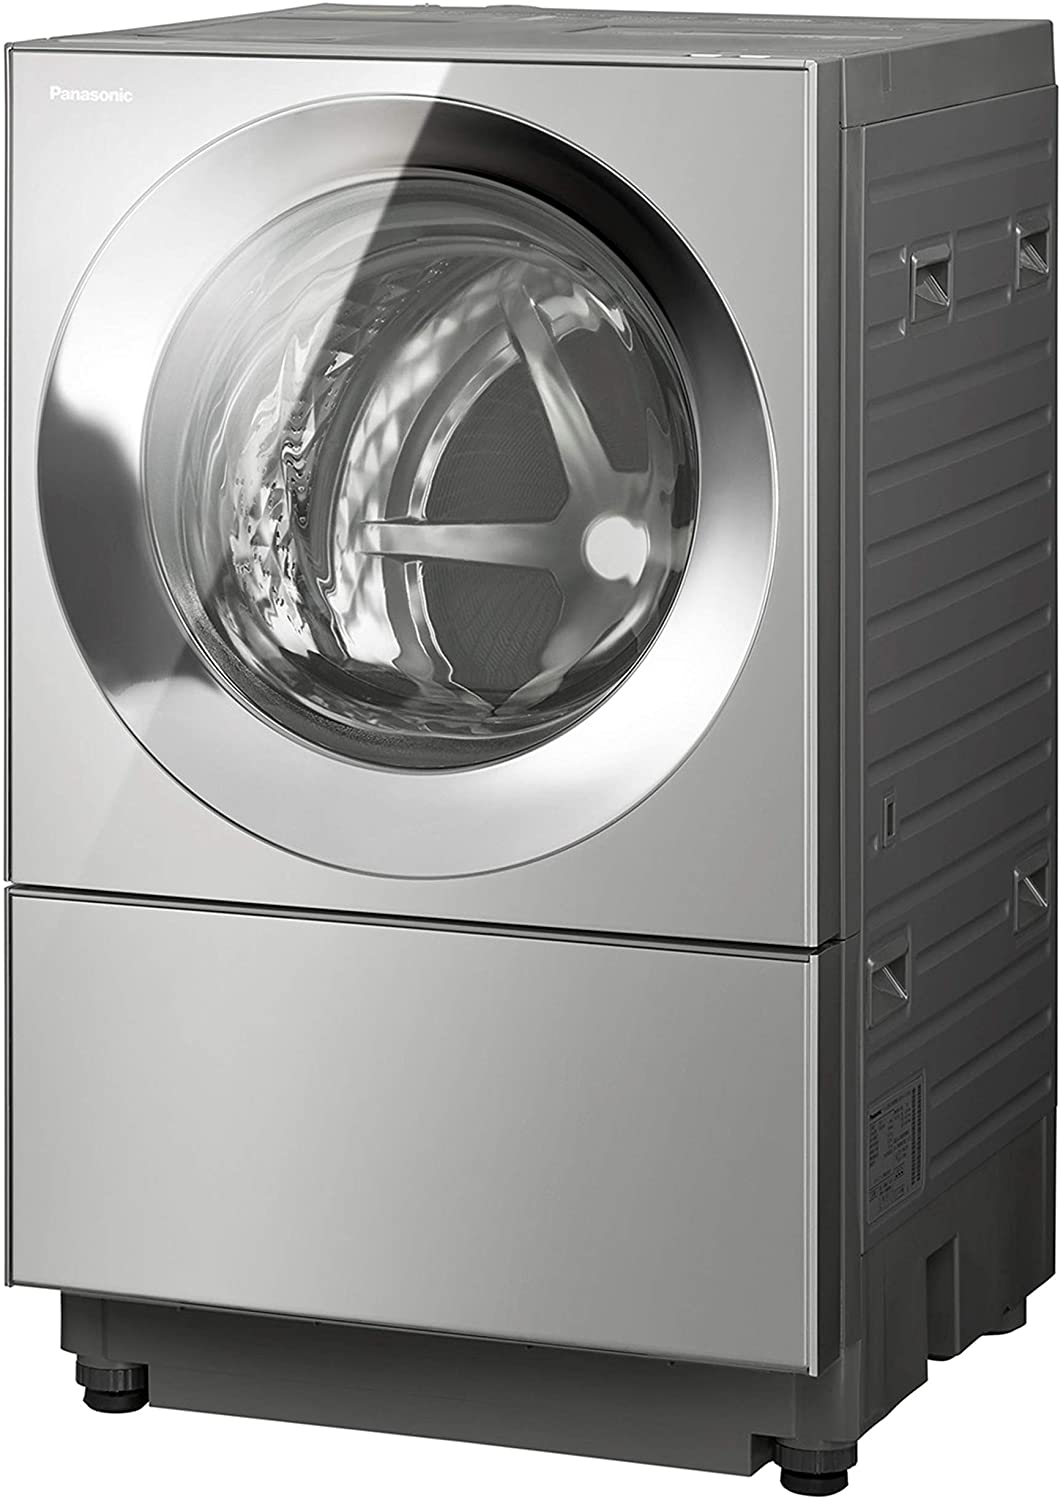 Panasonic(パナソニック) キューブル ななめドラム洗濯乾燥機 NA-VG2400の商品画像サムネ1 